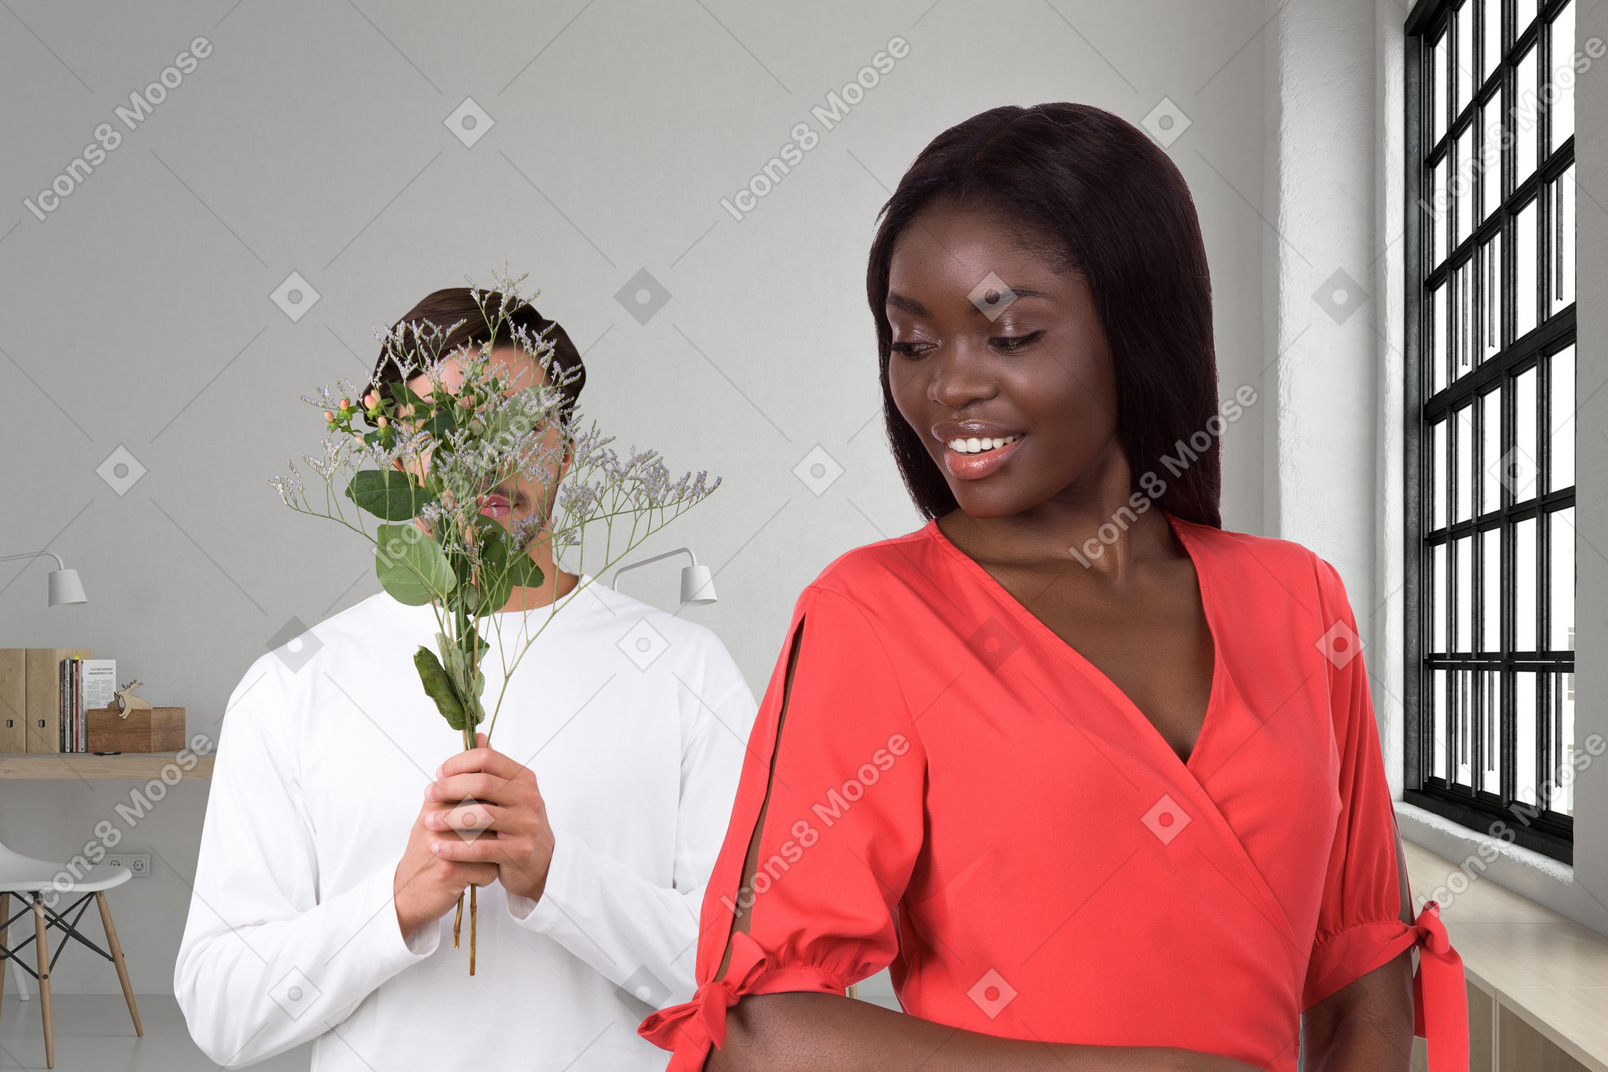 Homme donnant à une femme un bouquet de fleurs